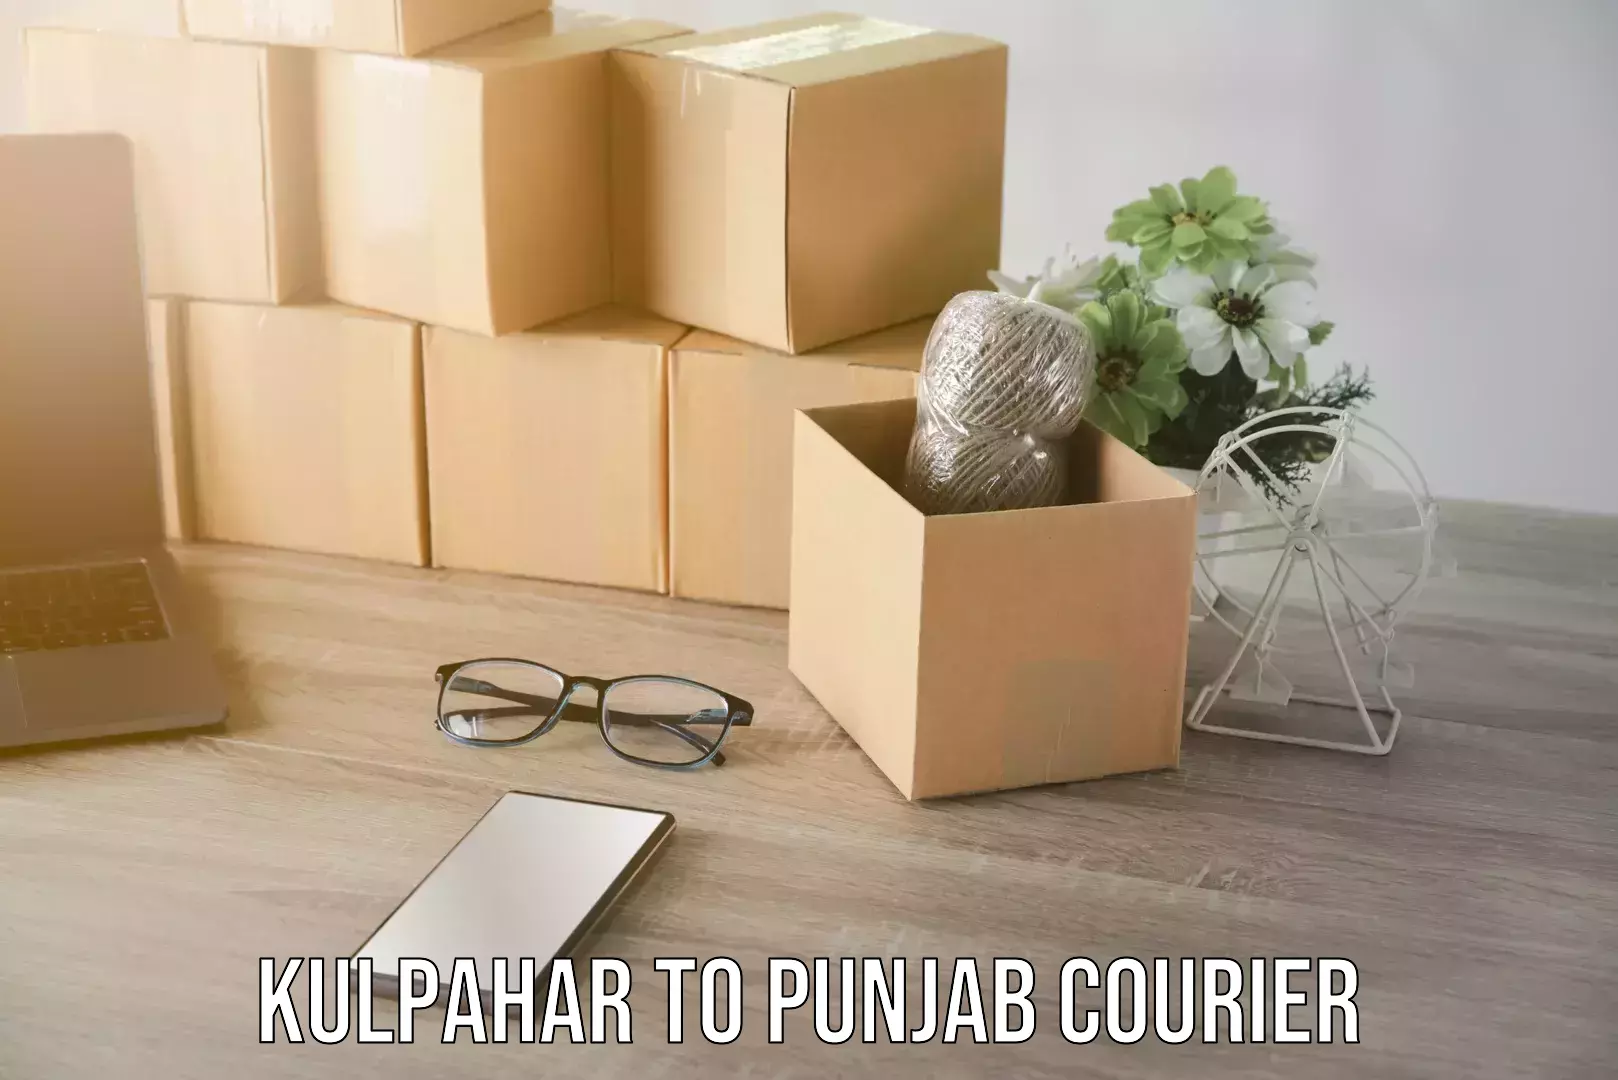 Trusted furniture transport Kulpahar to Punjab